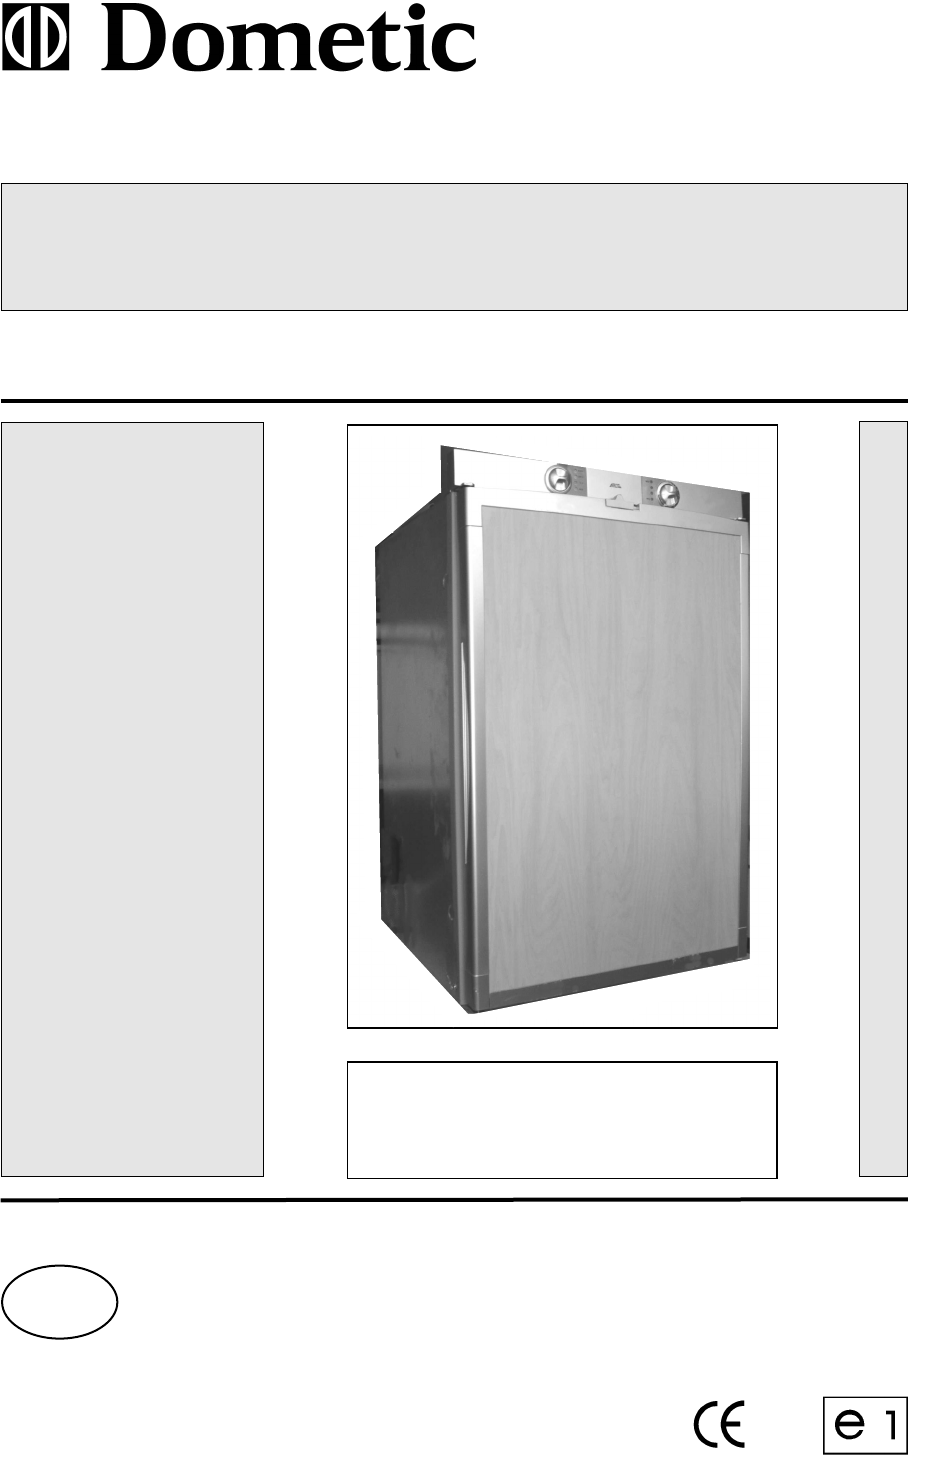 Dometic Refrigerator RM 7361 L User Guide | ManualsOnline.com